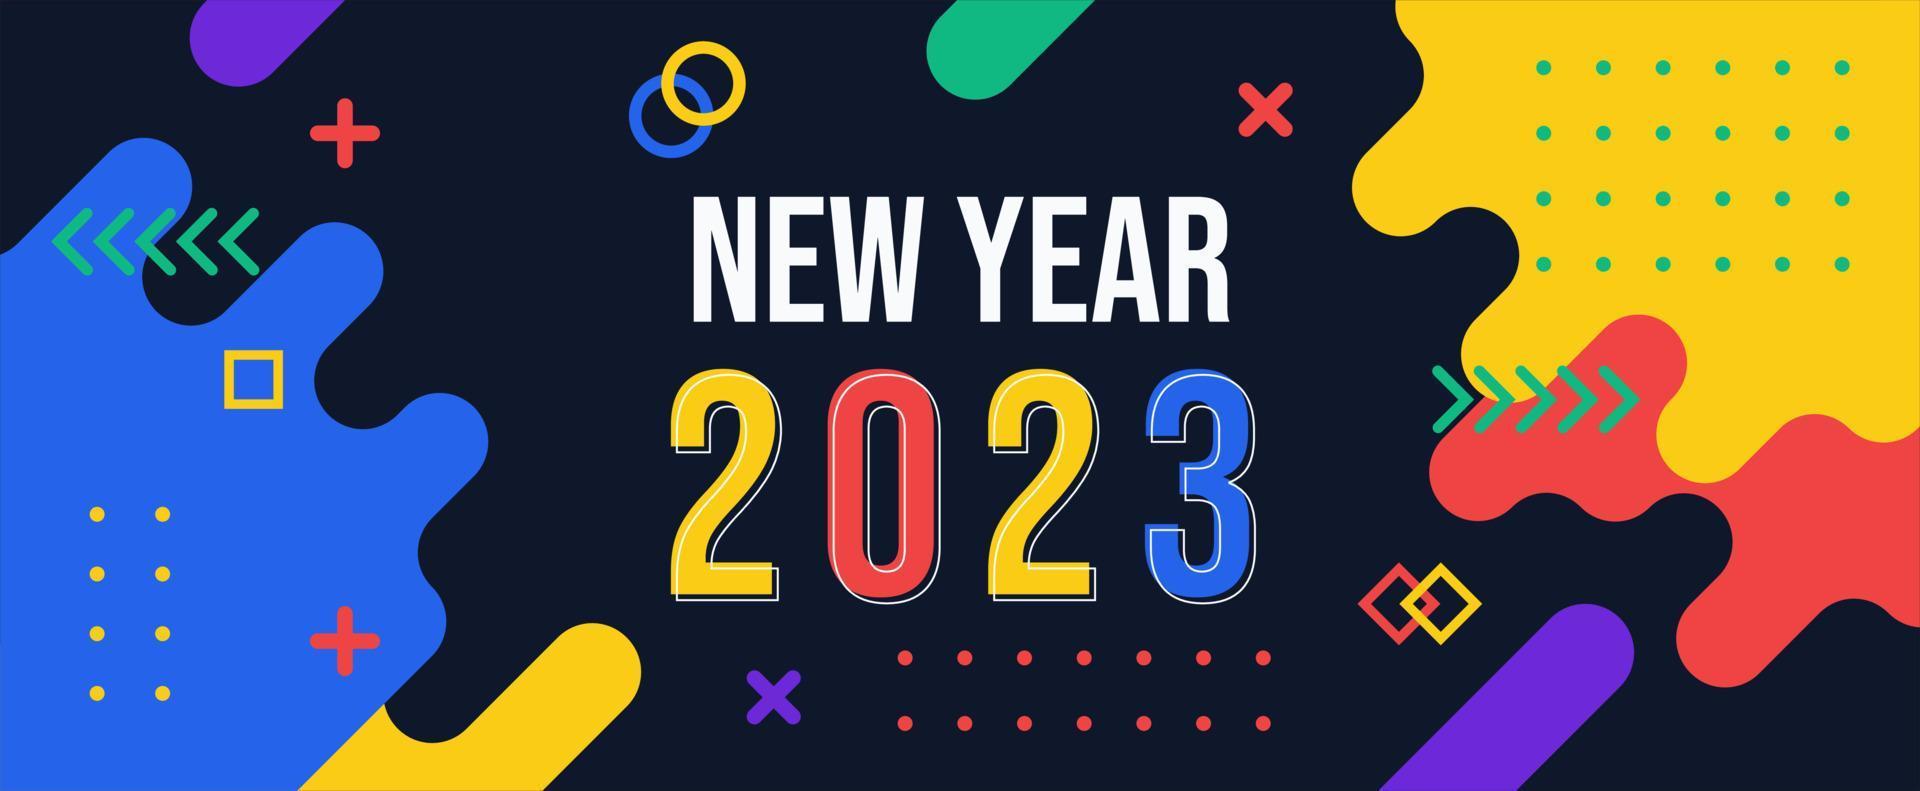 banner de año nuevo 2023 con fondo abstracto geométrico moderno. diseño de tarjeta de felicitación de feliz año nuevo para el año 2023 vector